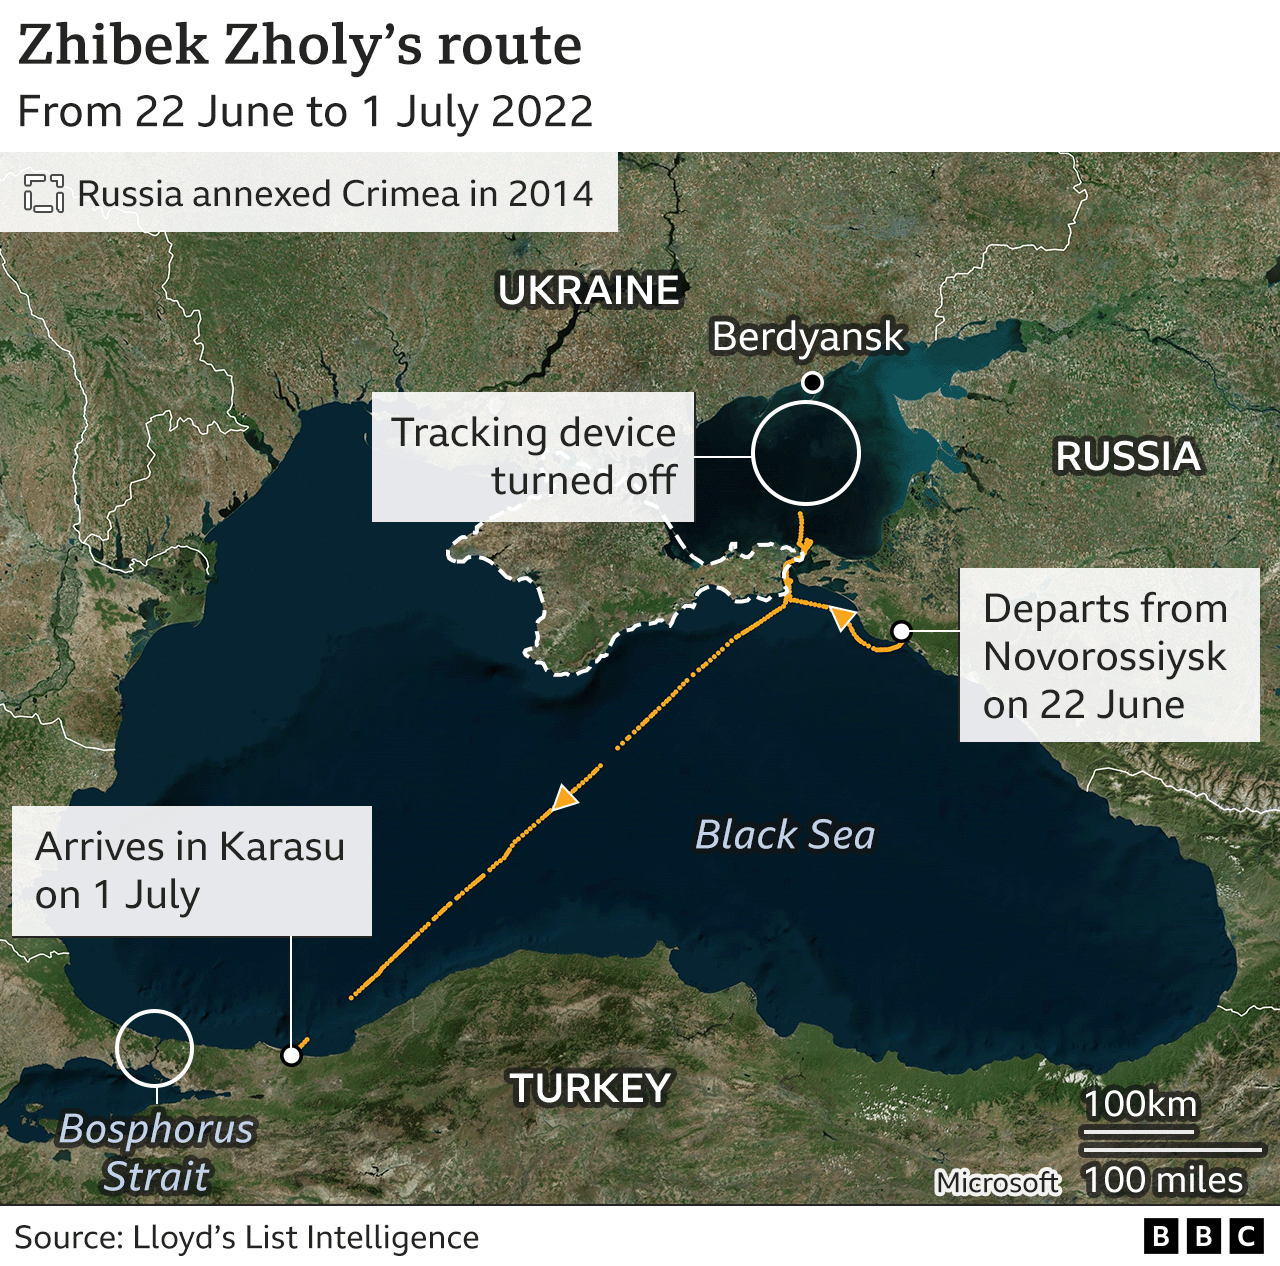 Zhibek Zholy's route map